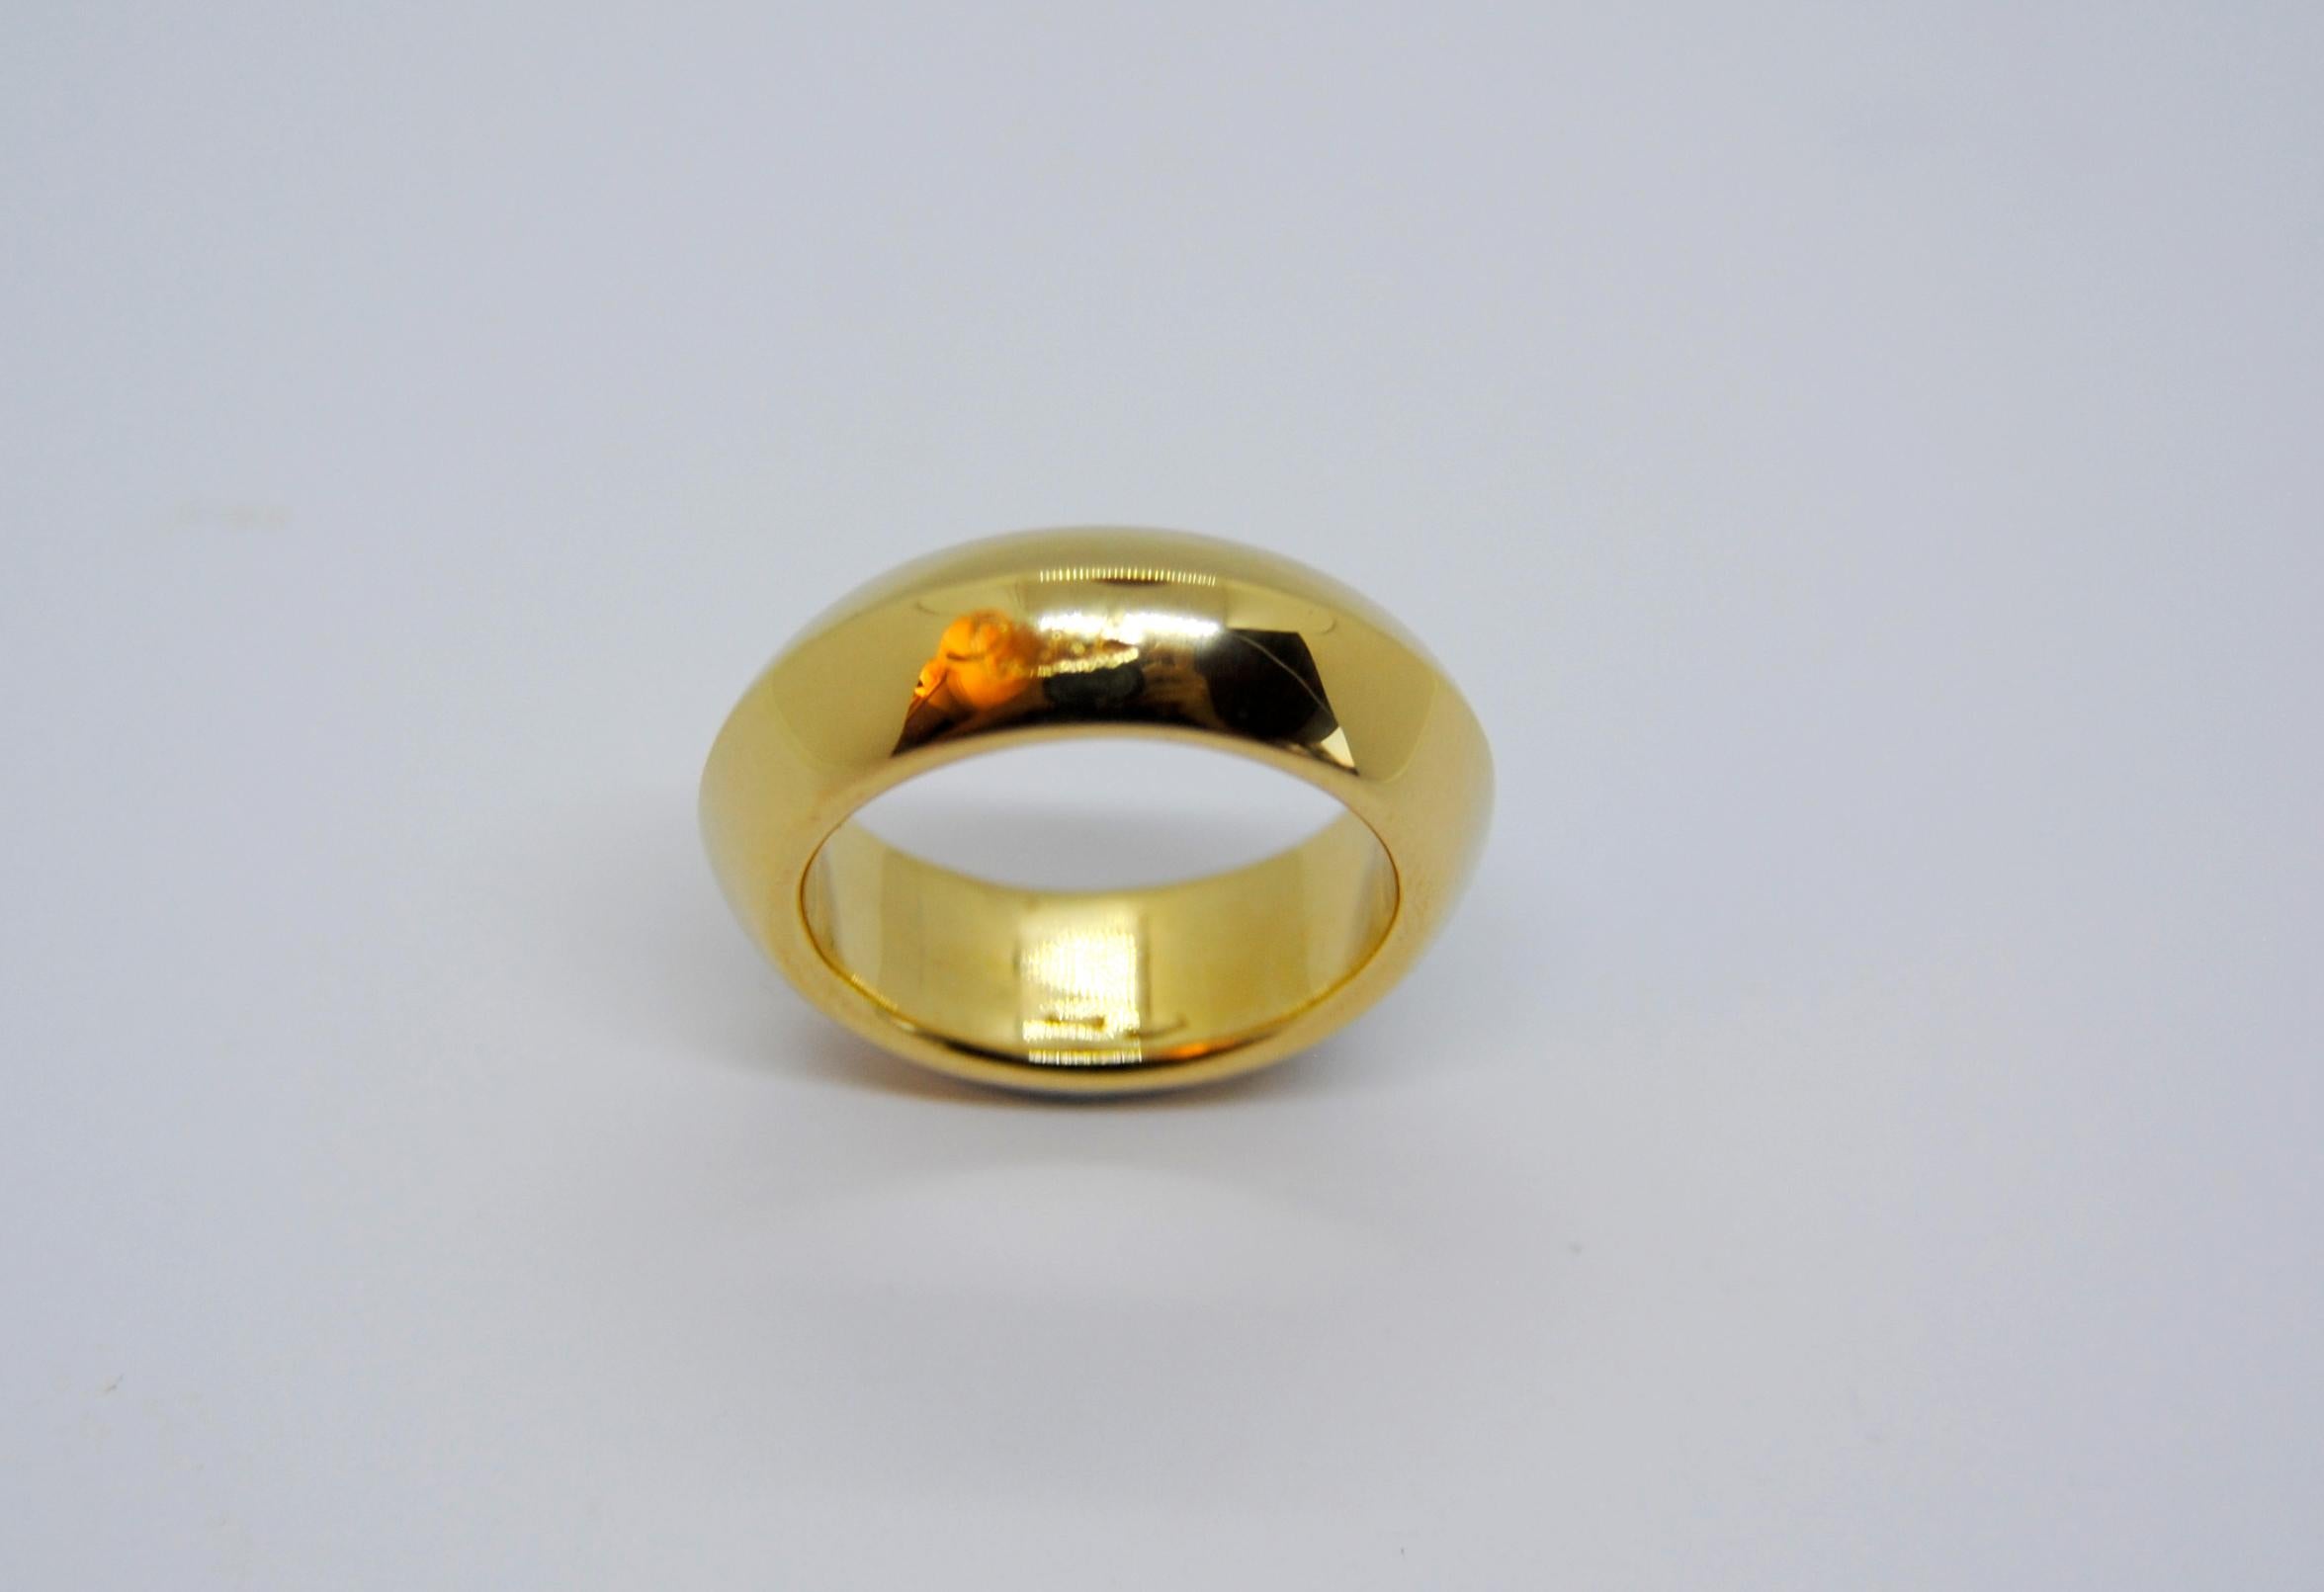 Contemporary Pomellato 18 Karat Yellow Gold Solid Ring Iconic and Classic Pomellato